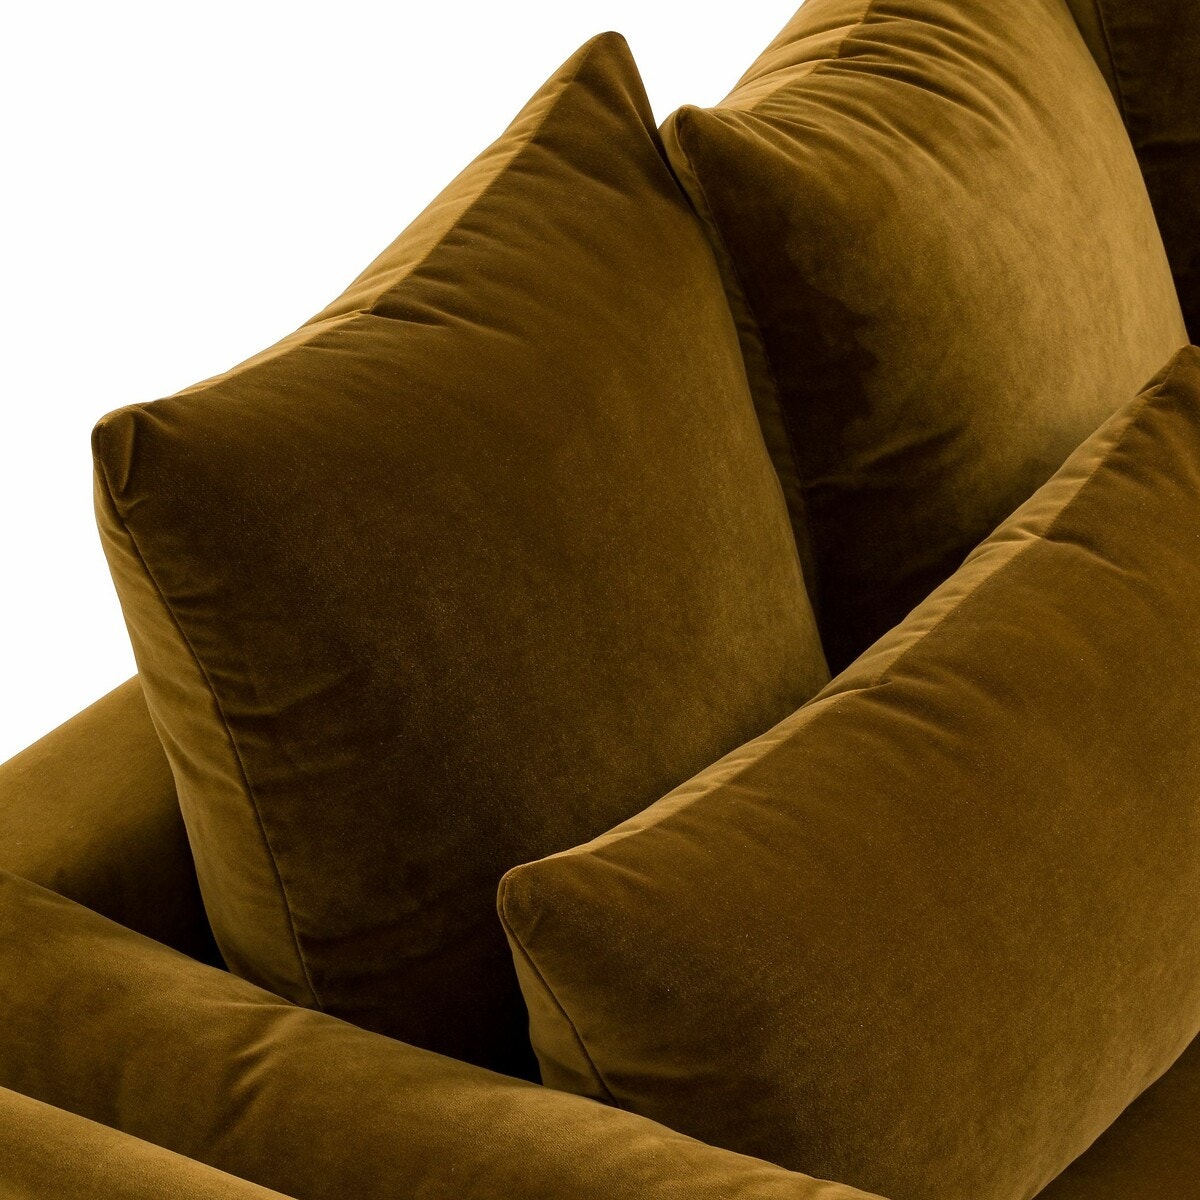 Πτυσσόμενος τριθέσιος καναπές-κρεβάτι με βελουτέ ταπετσαρία, Mariano